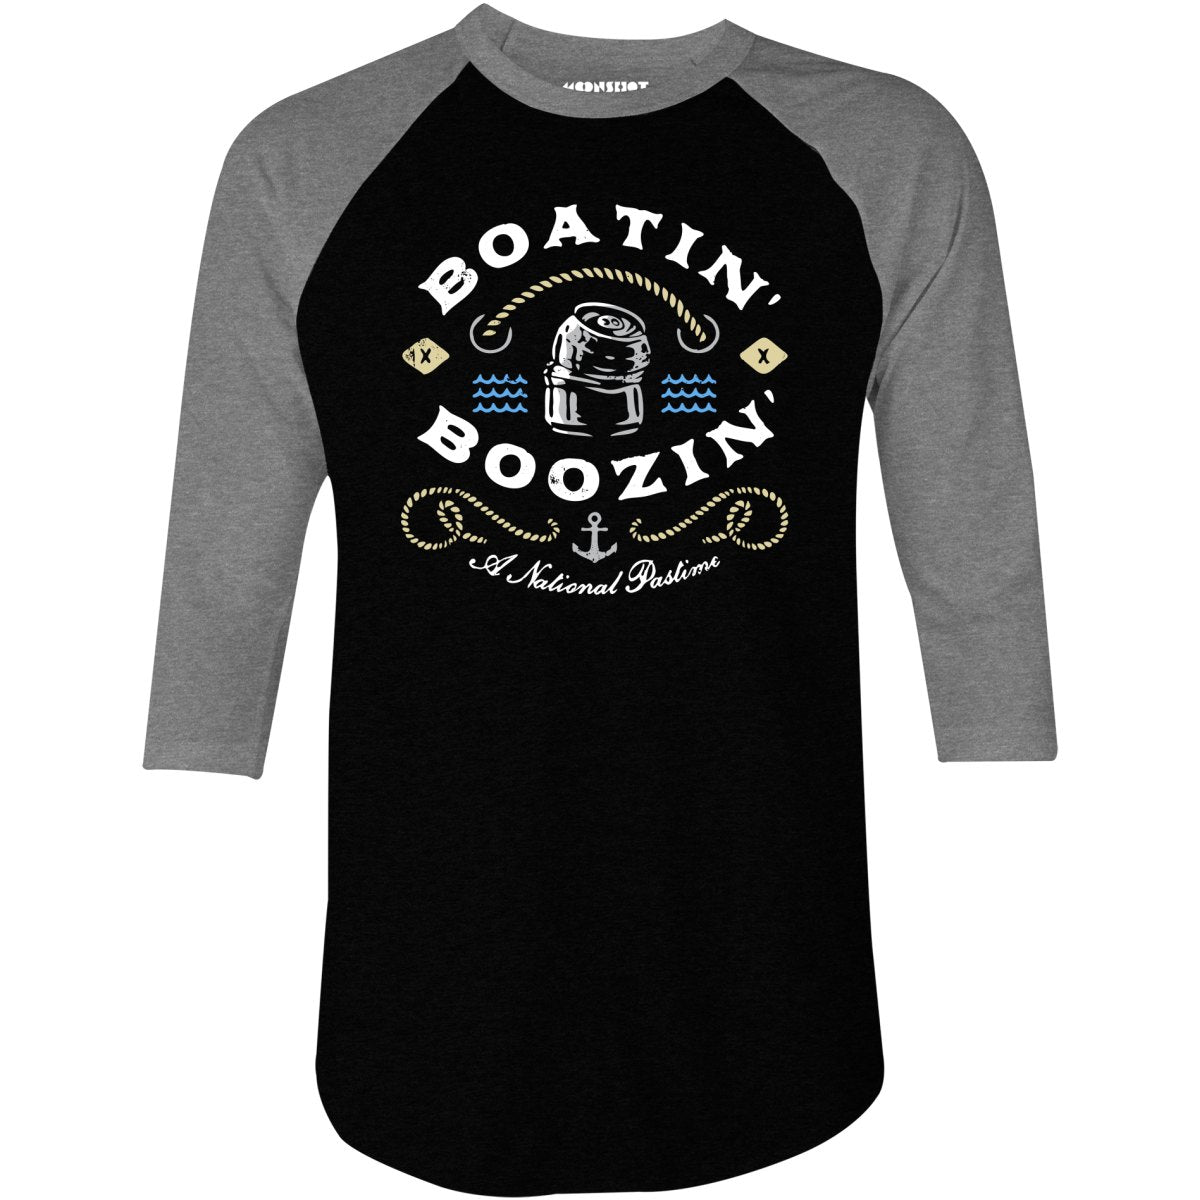 Boatin' & Boozin' - 3/4 Sleeve Raglan T-Shirt